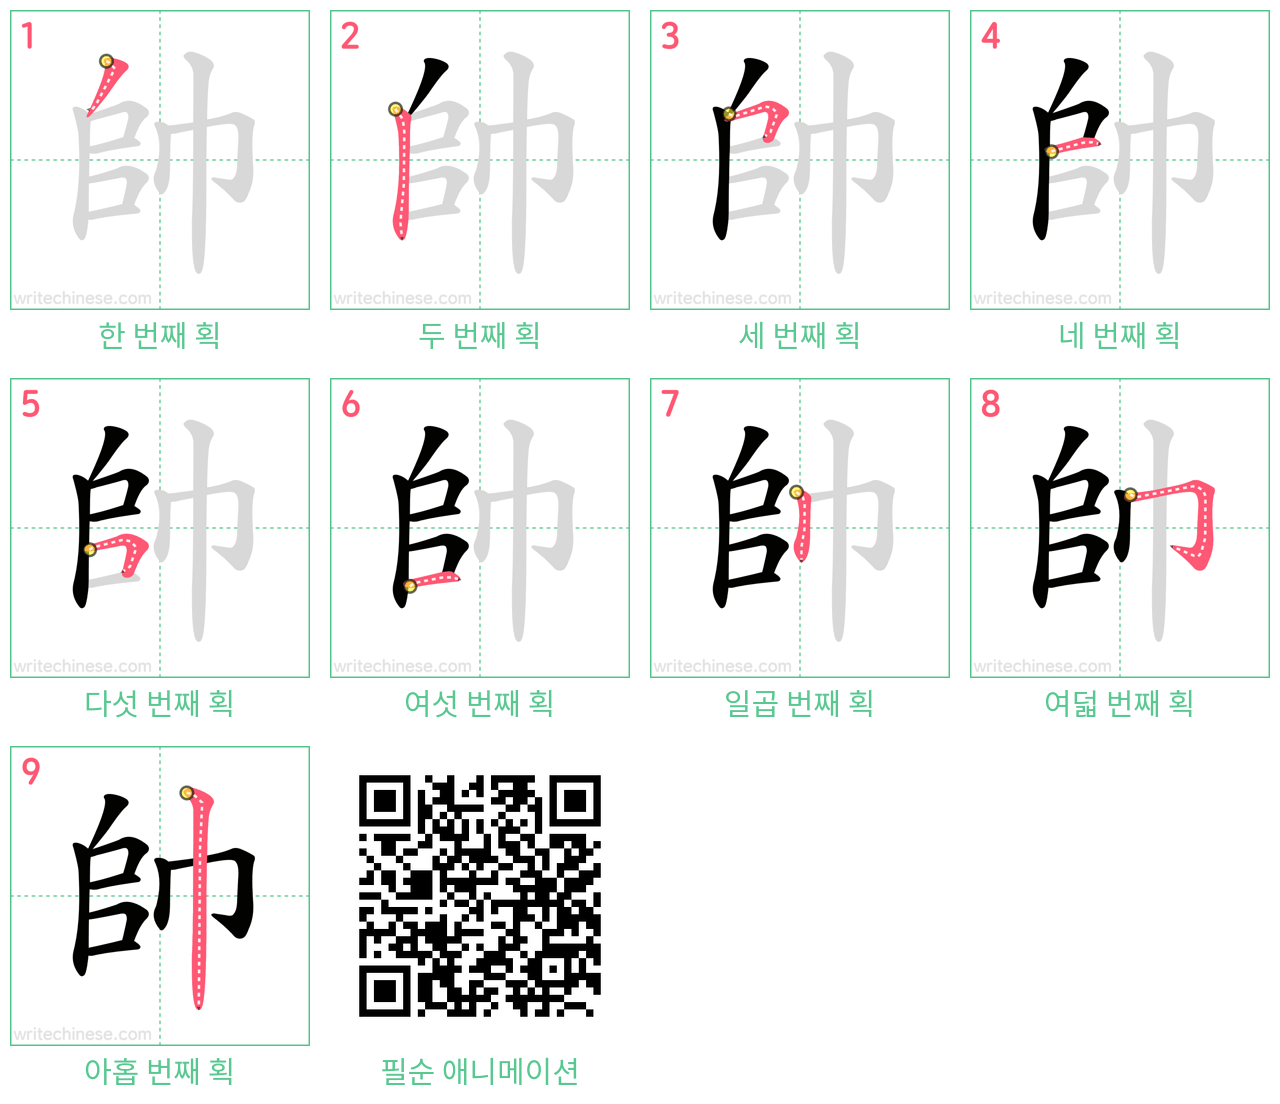 帥 step-by-step stroke order diagrams